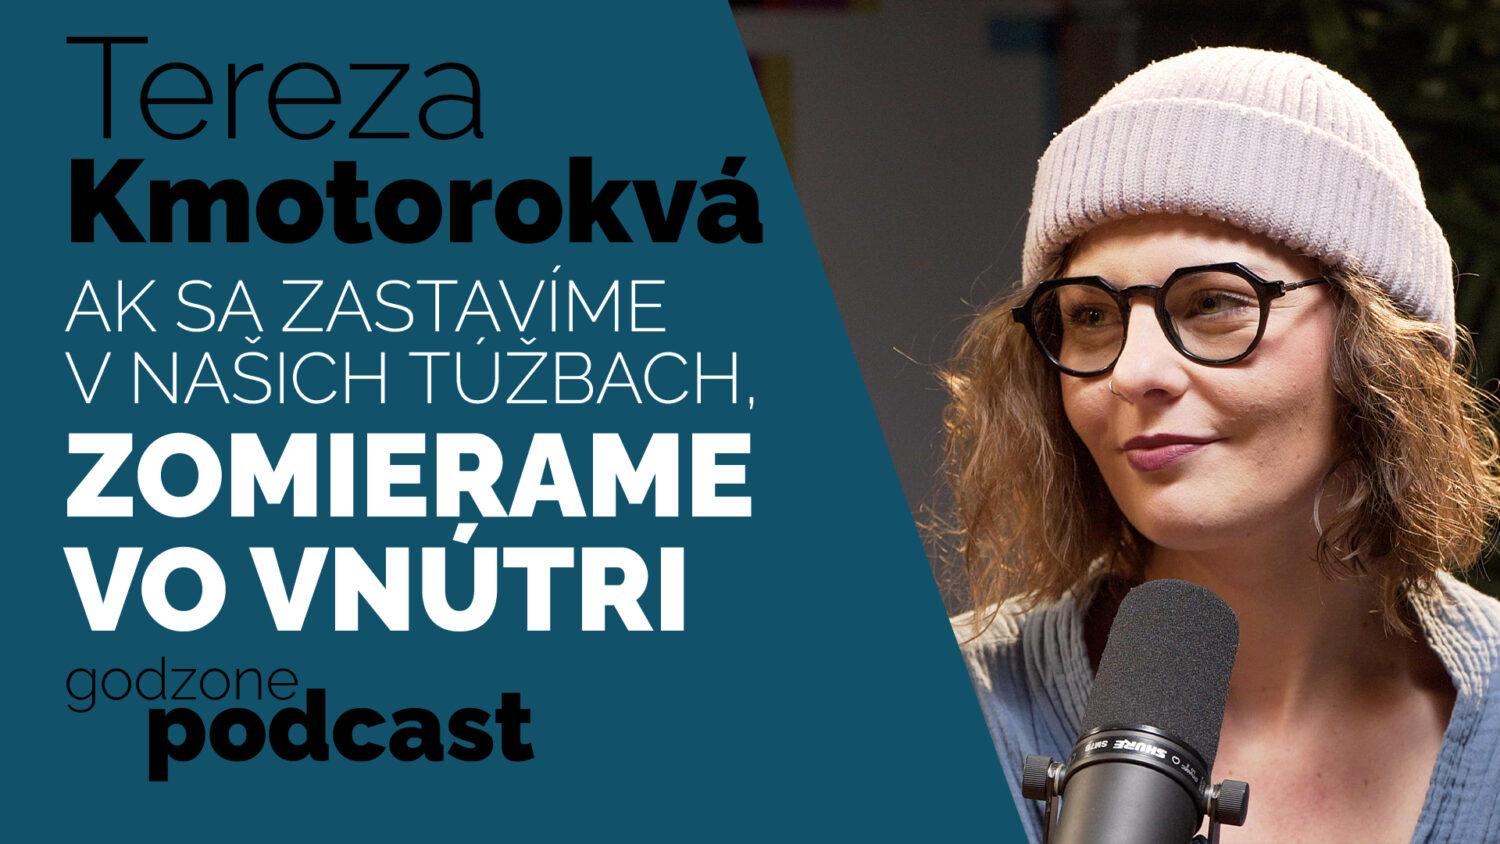 Godzone podcast_Tereza Kmotorková: Ak sa zastavíme v našich túžbach, zomierame vo vnútri